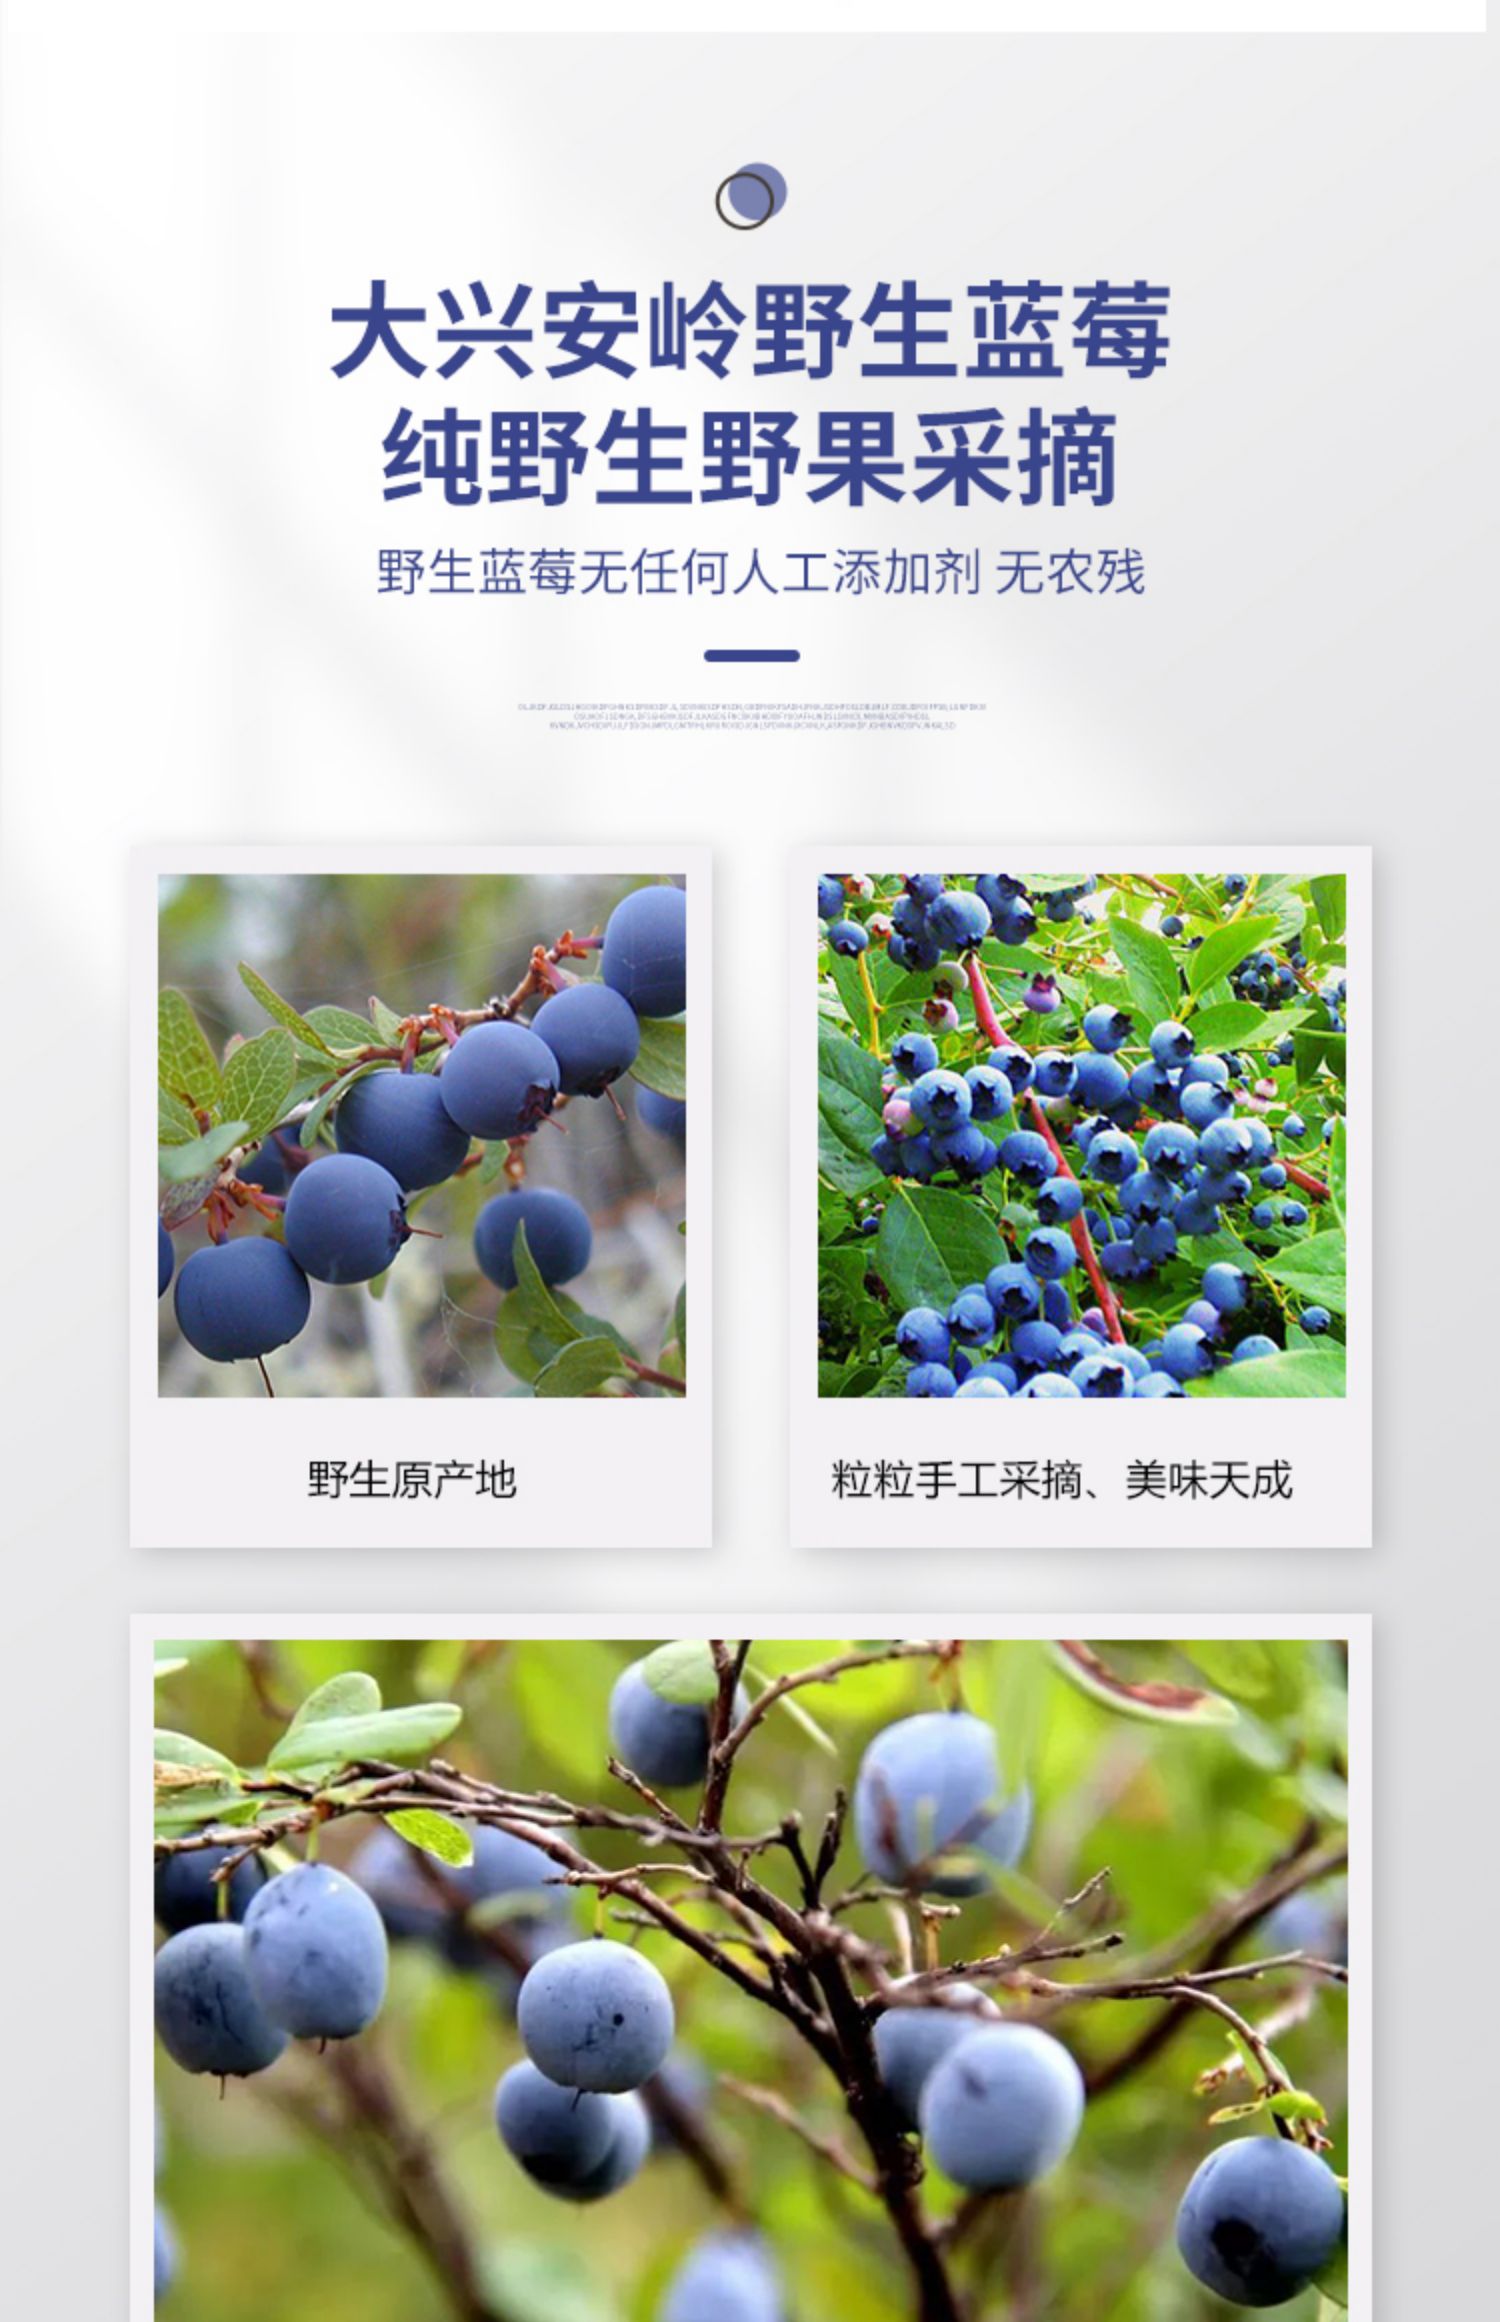 【五行健】大兴安岭野生蓝莓原浆30ml*10袋